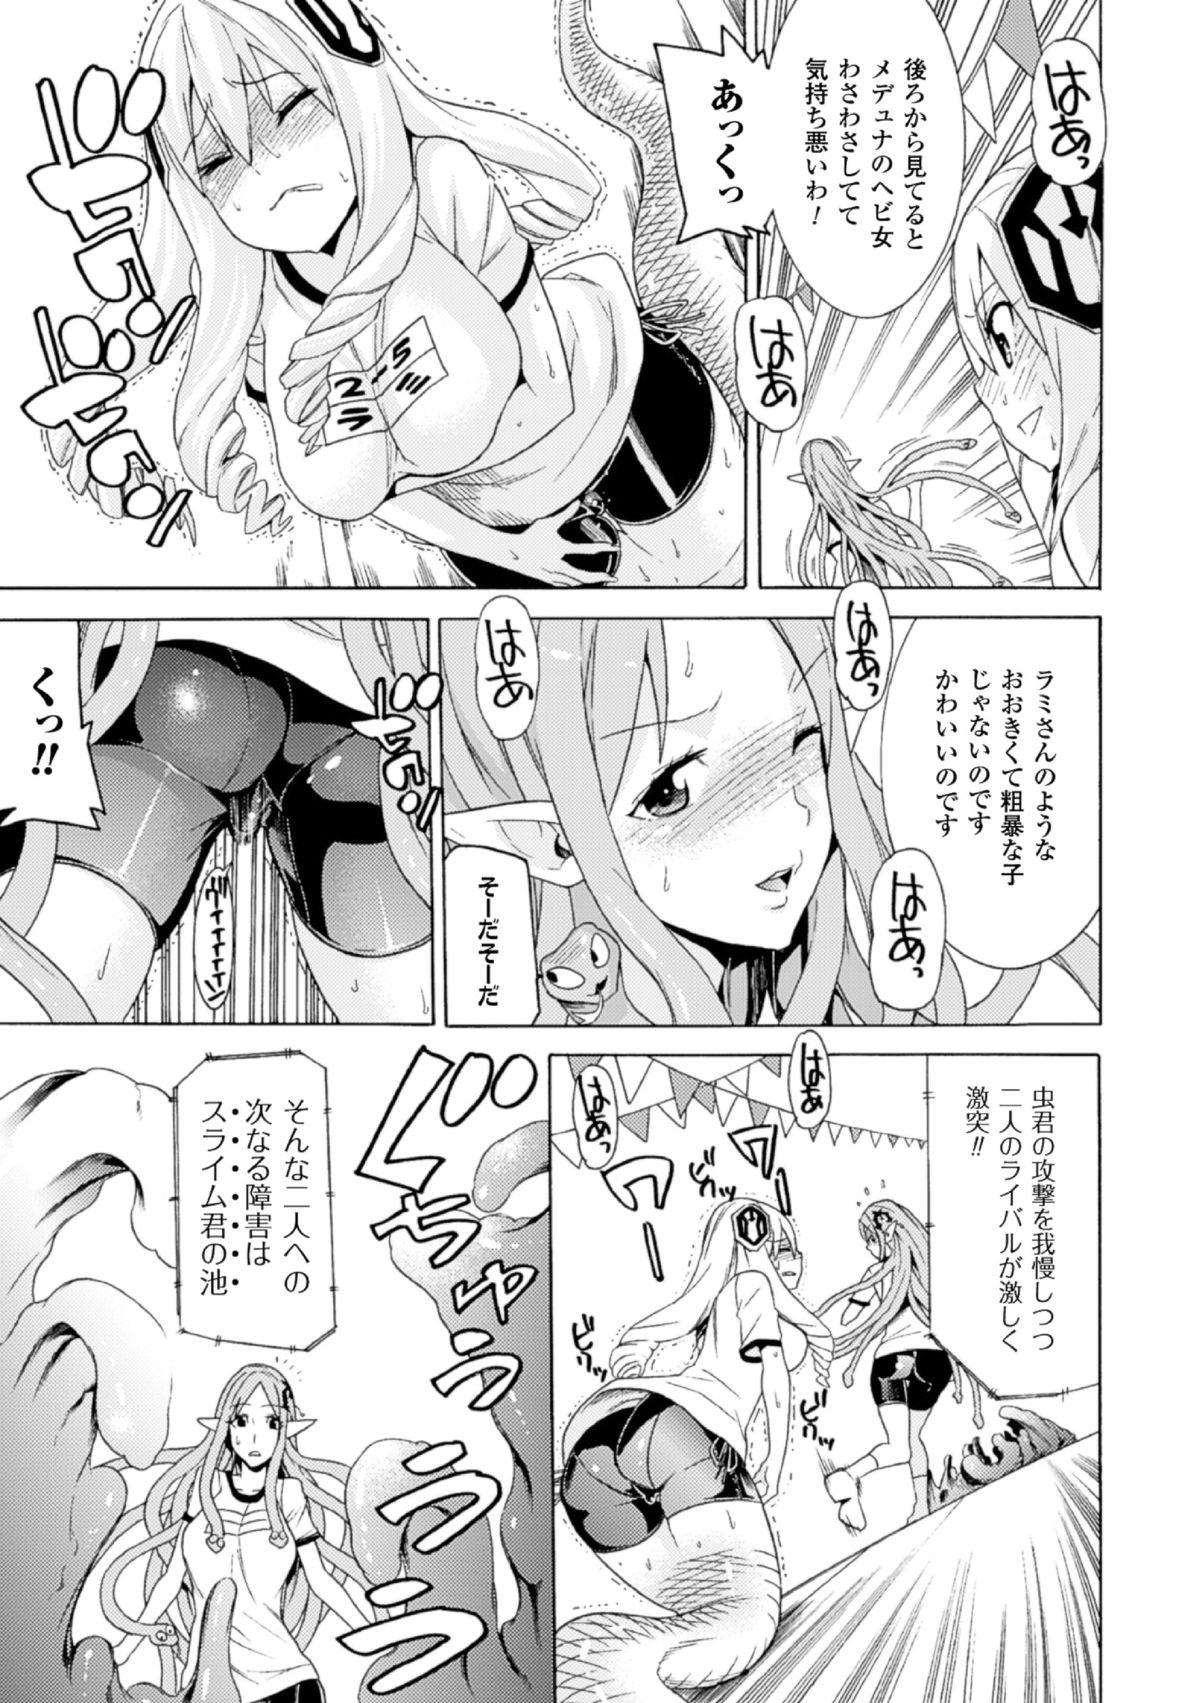 Ass Lick 2D Comic Magazine - Monster Musume ga Tsudou Ishuzoku Gakuen e Youkoso! Vol. 2 Jizz - Page 9